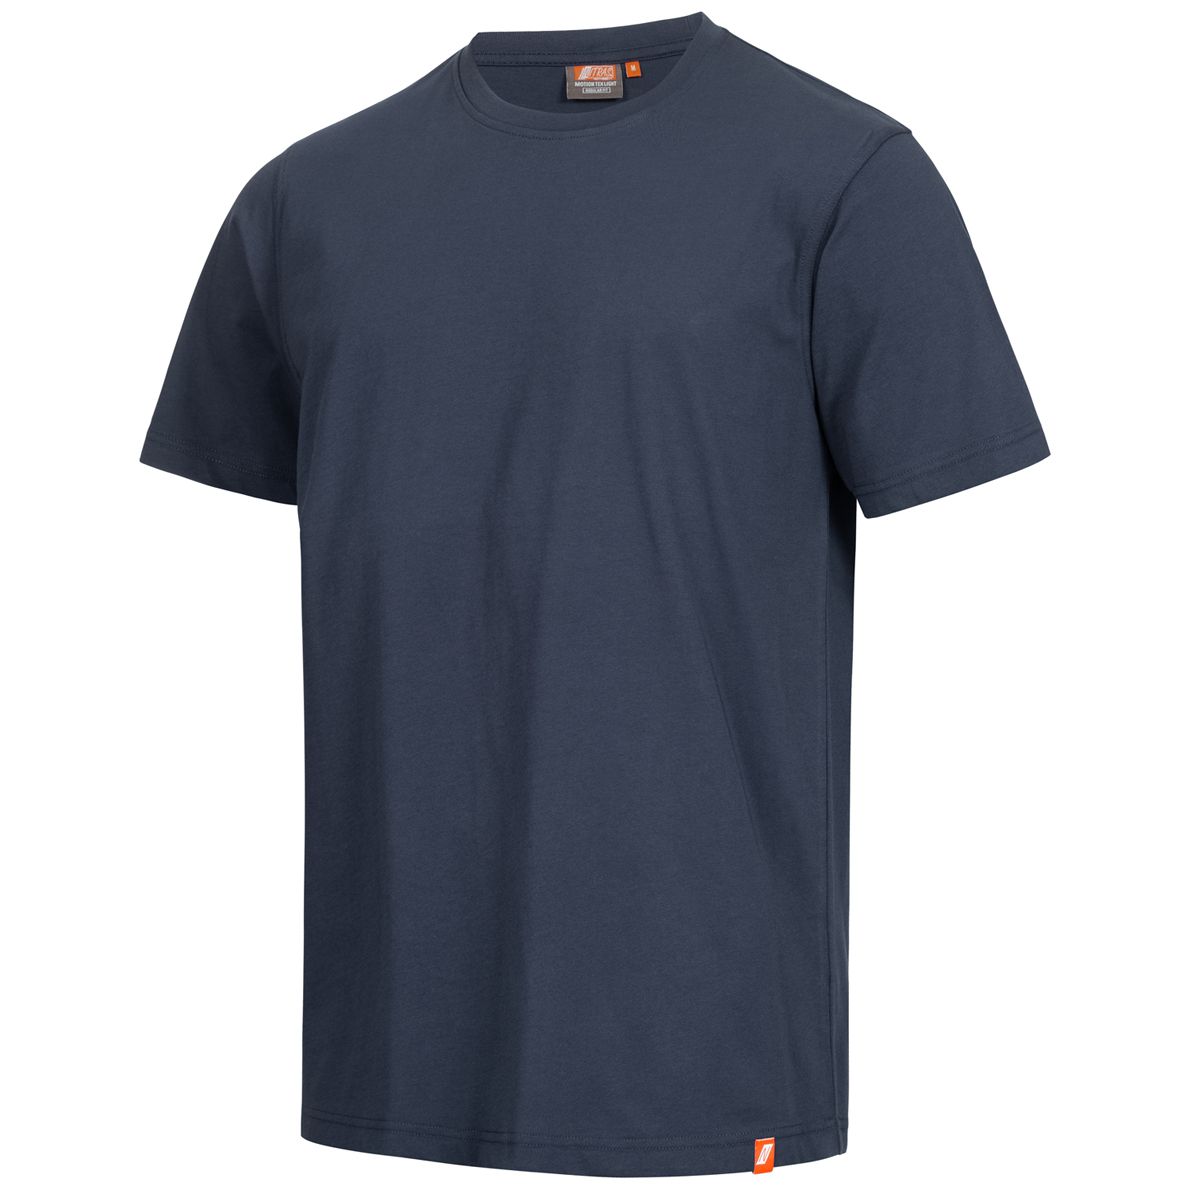 NITRAS MOTION TEX LIGHT Arbeits-T-Shirt - Kurzarm-Hemd aus 100% Baumwolle - für die Arbeit - Dunkelblau - XXL